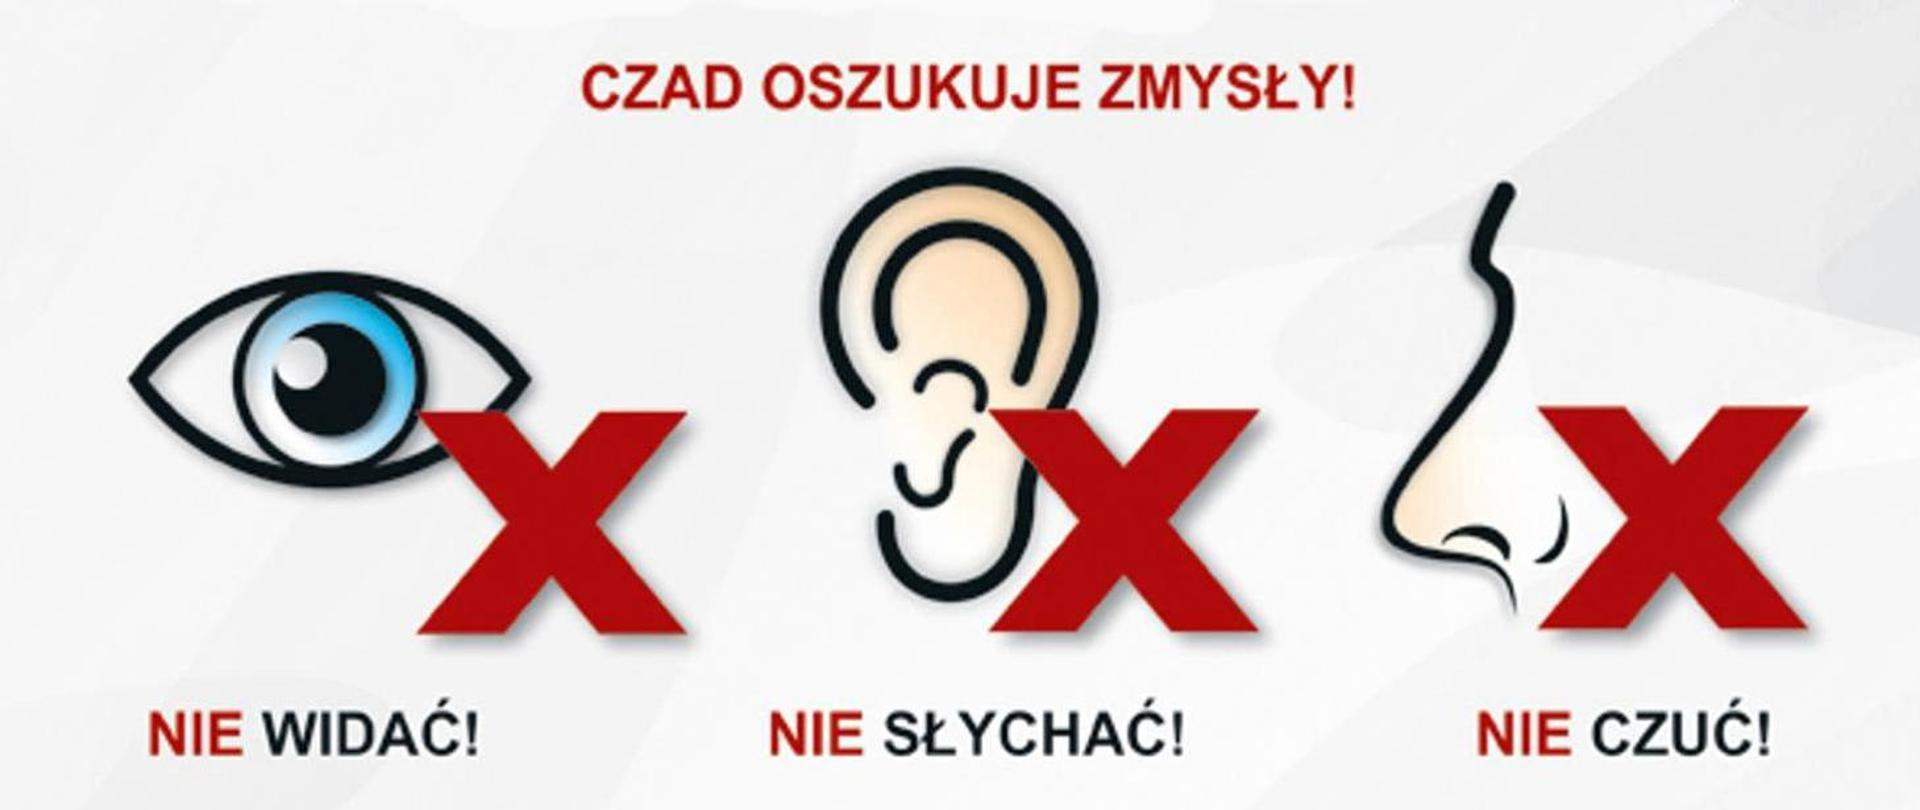 Plakat przedstawiający ludzkie oko, ucho i nos przekreślone czerwonym znakiem X z opisem czad oszukuje zmysły, nie widać, nie słychać, nie czuć